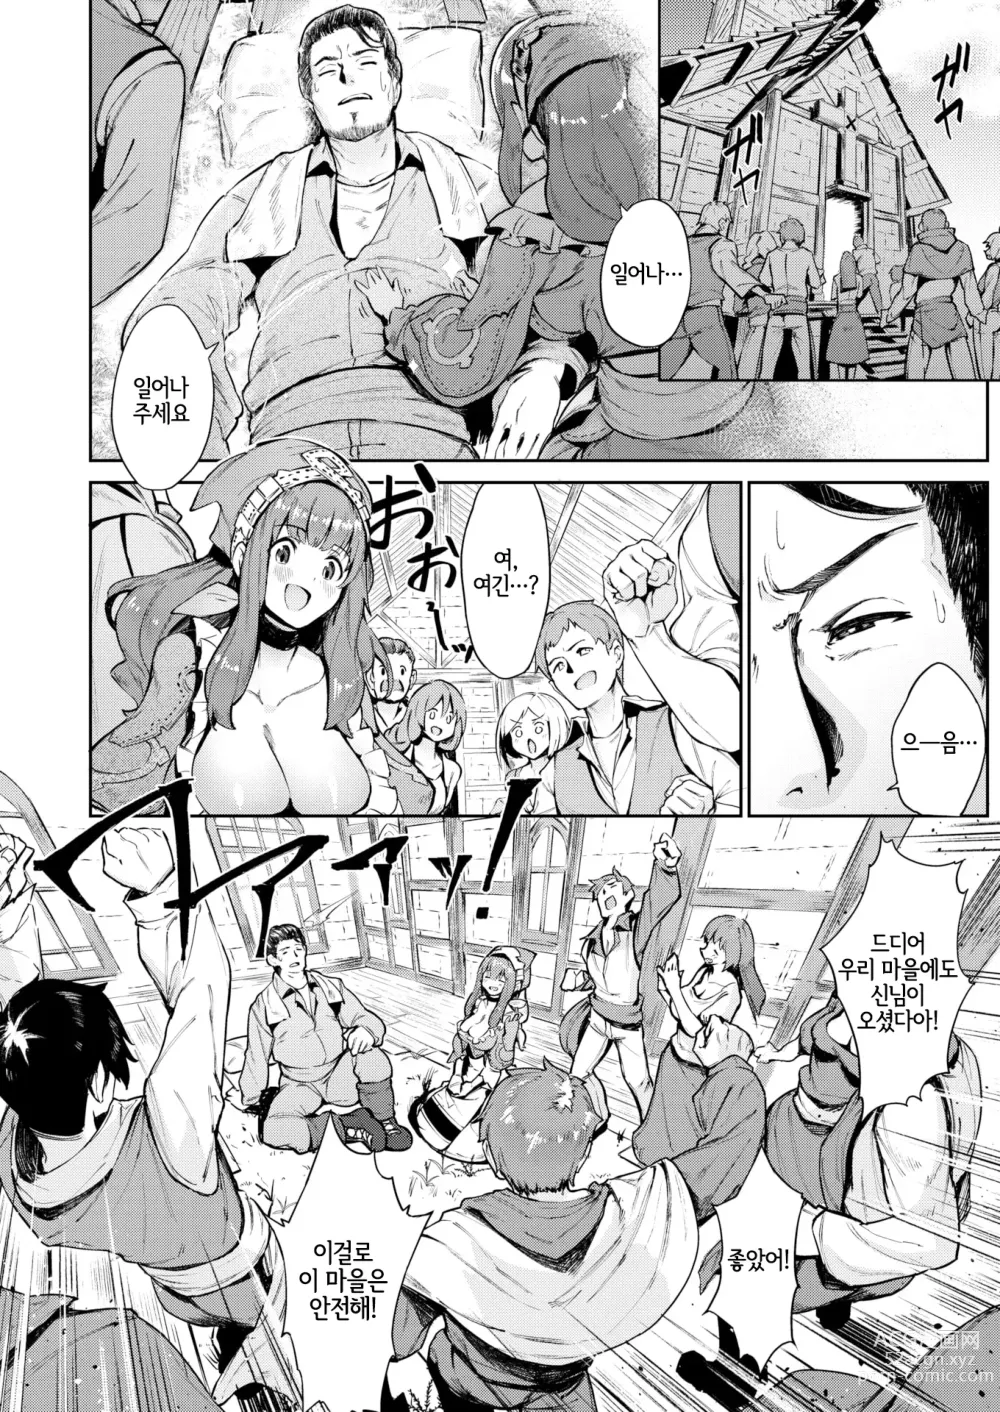 Page 3 of manga 수확제의 밤에